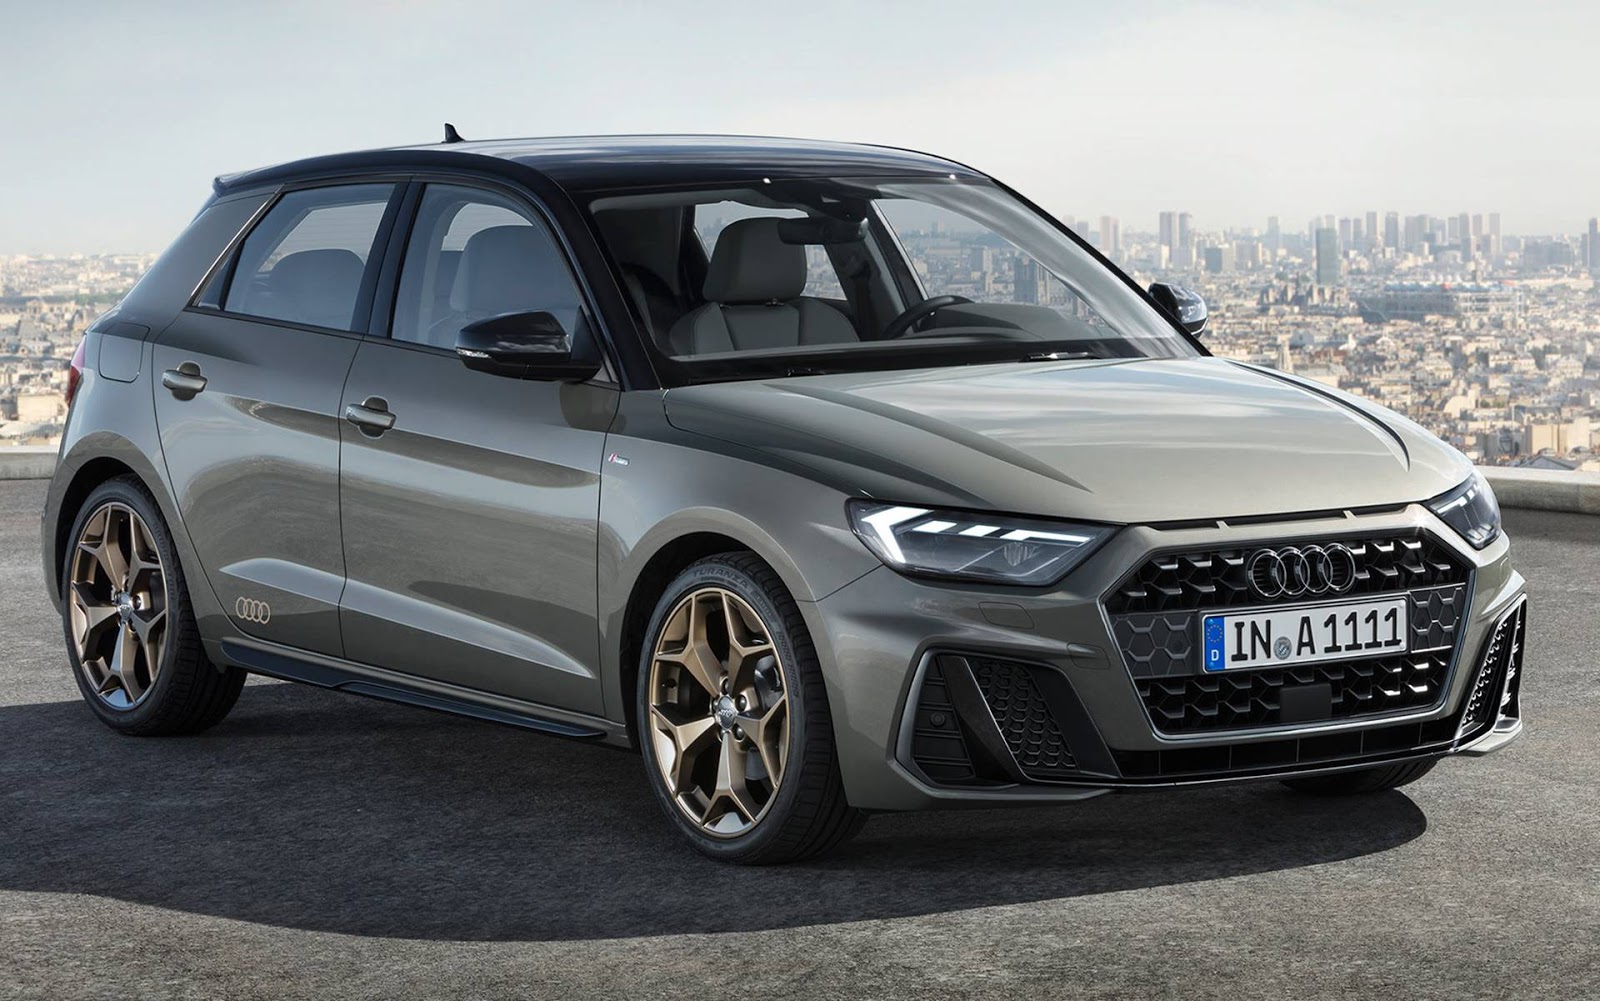 Novo Audi A1 2019: fotos, detalhes e especificações oficiais